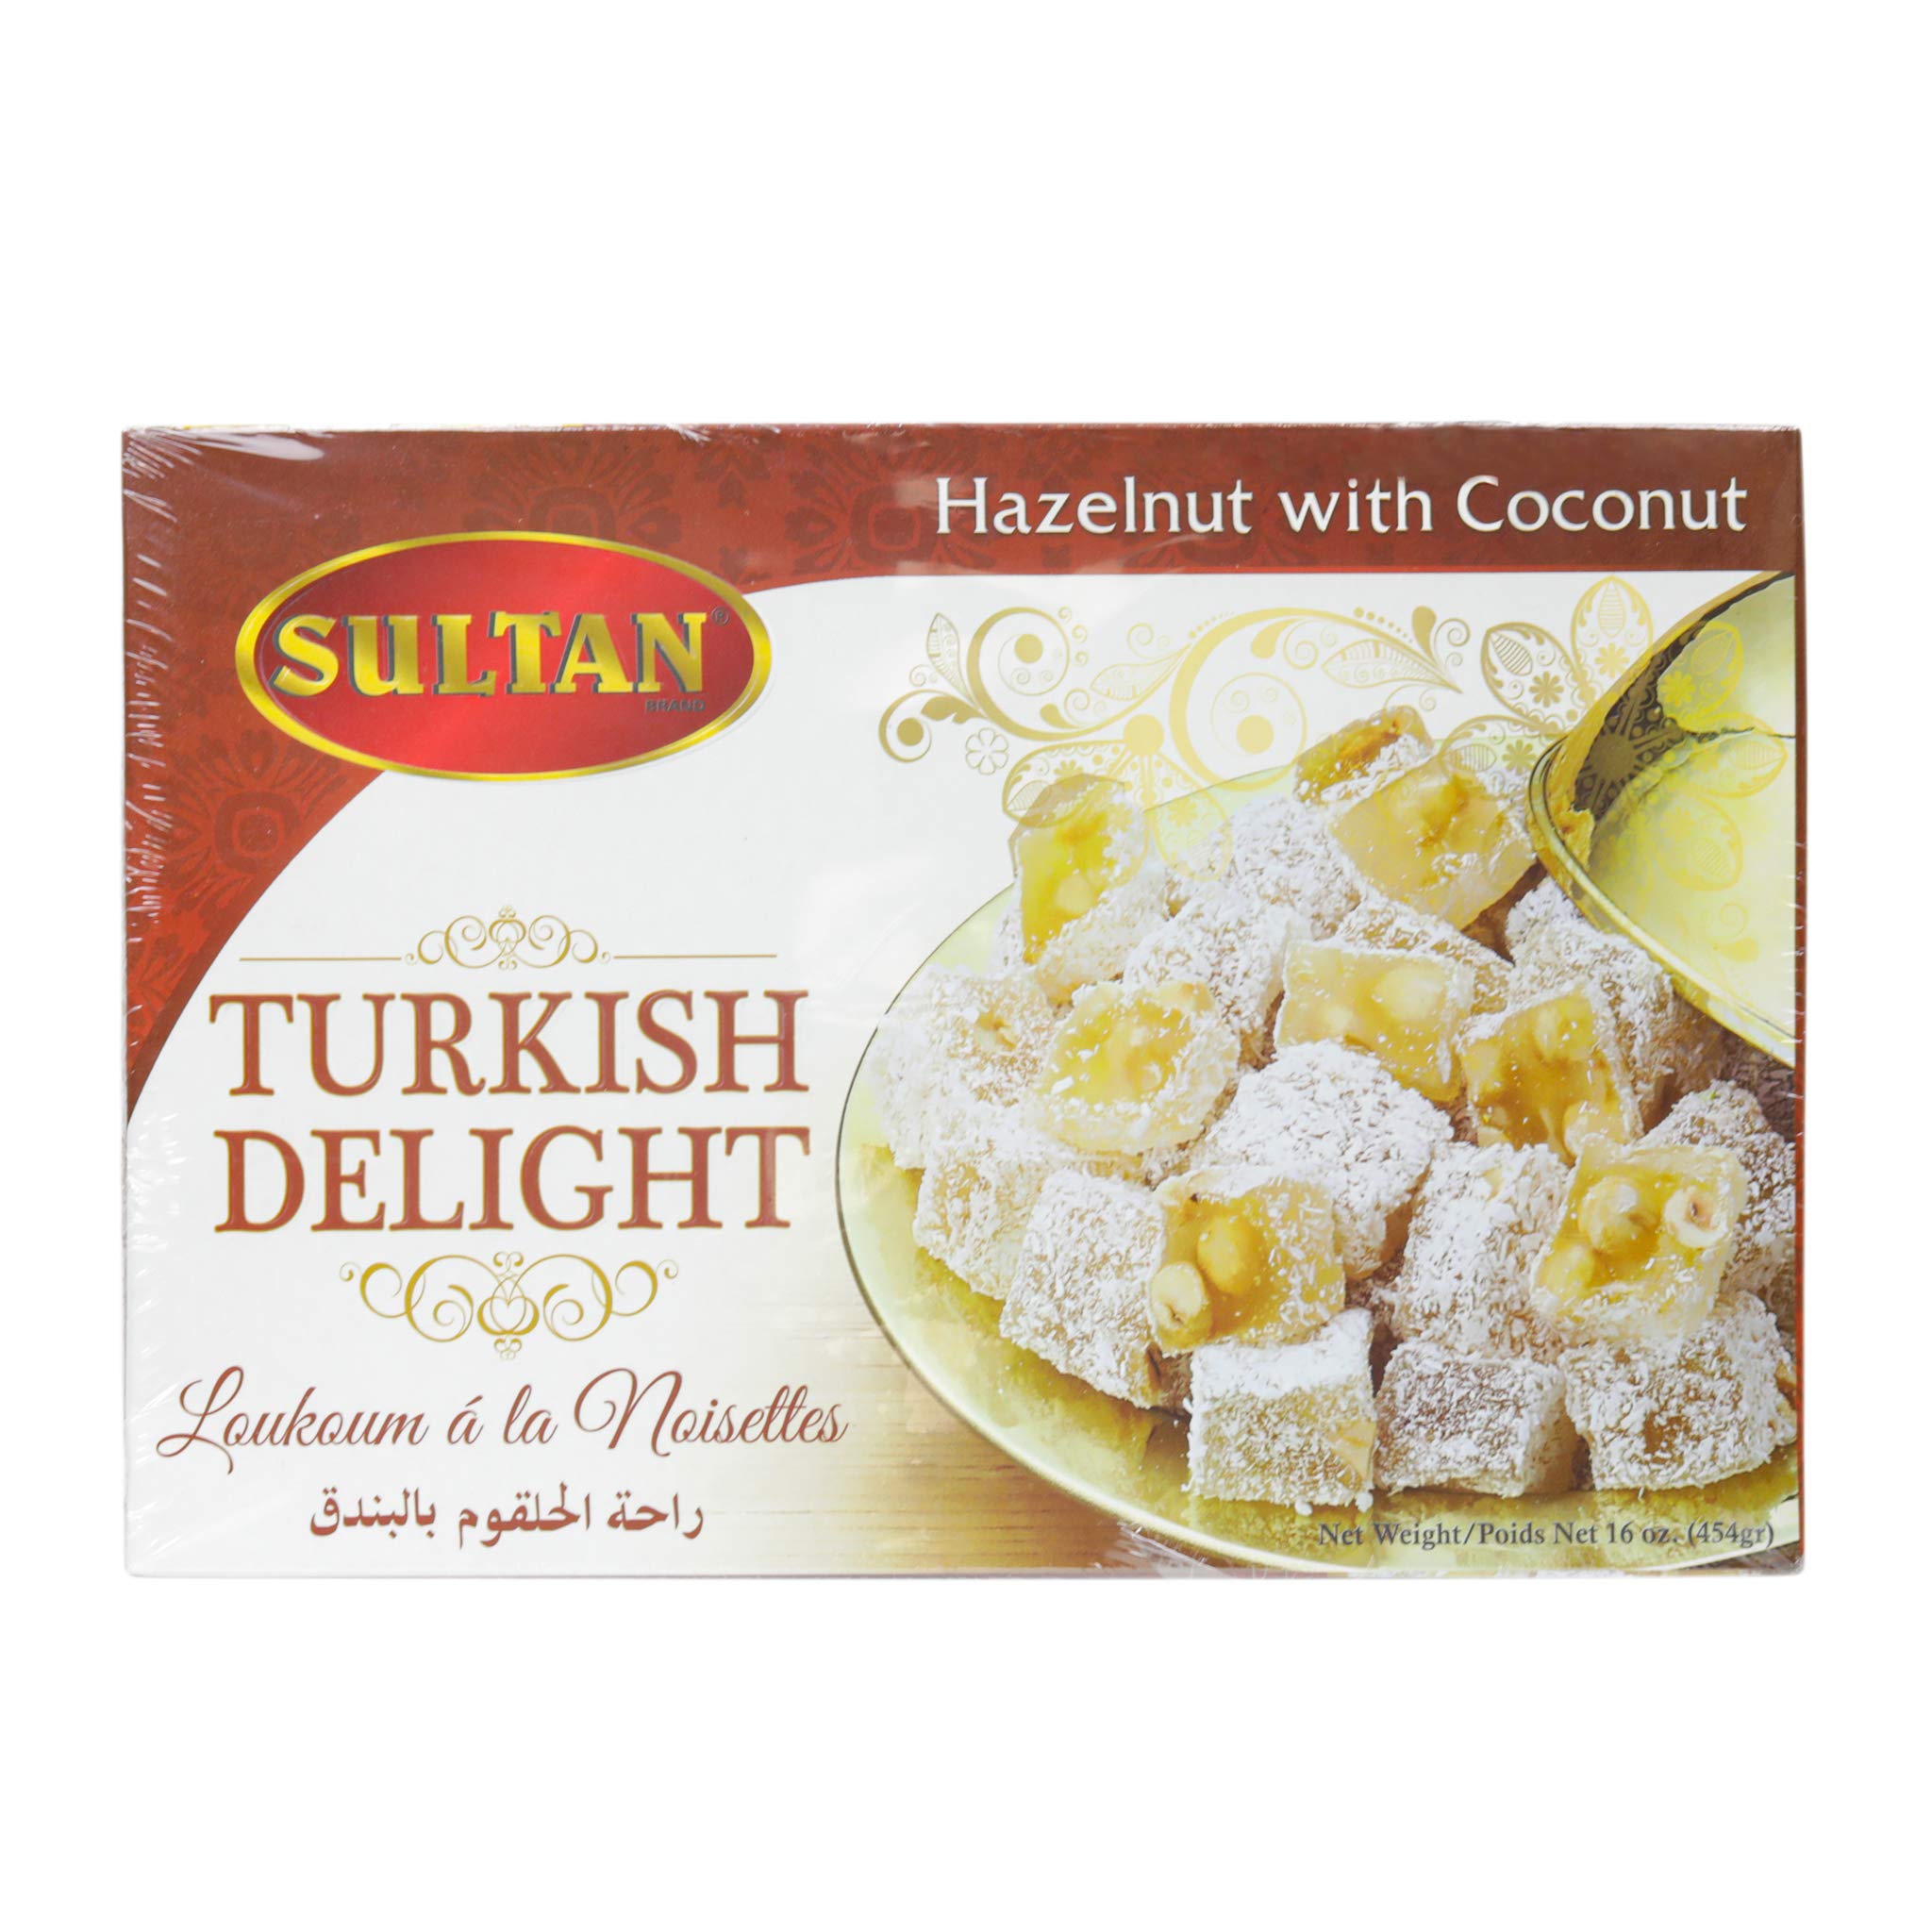 sultan-turkish-delight-hazelnut-w-coconut-16-oz-454g